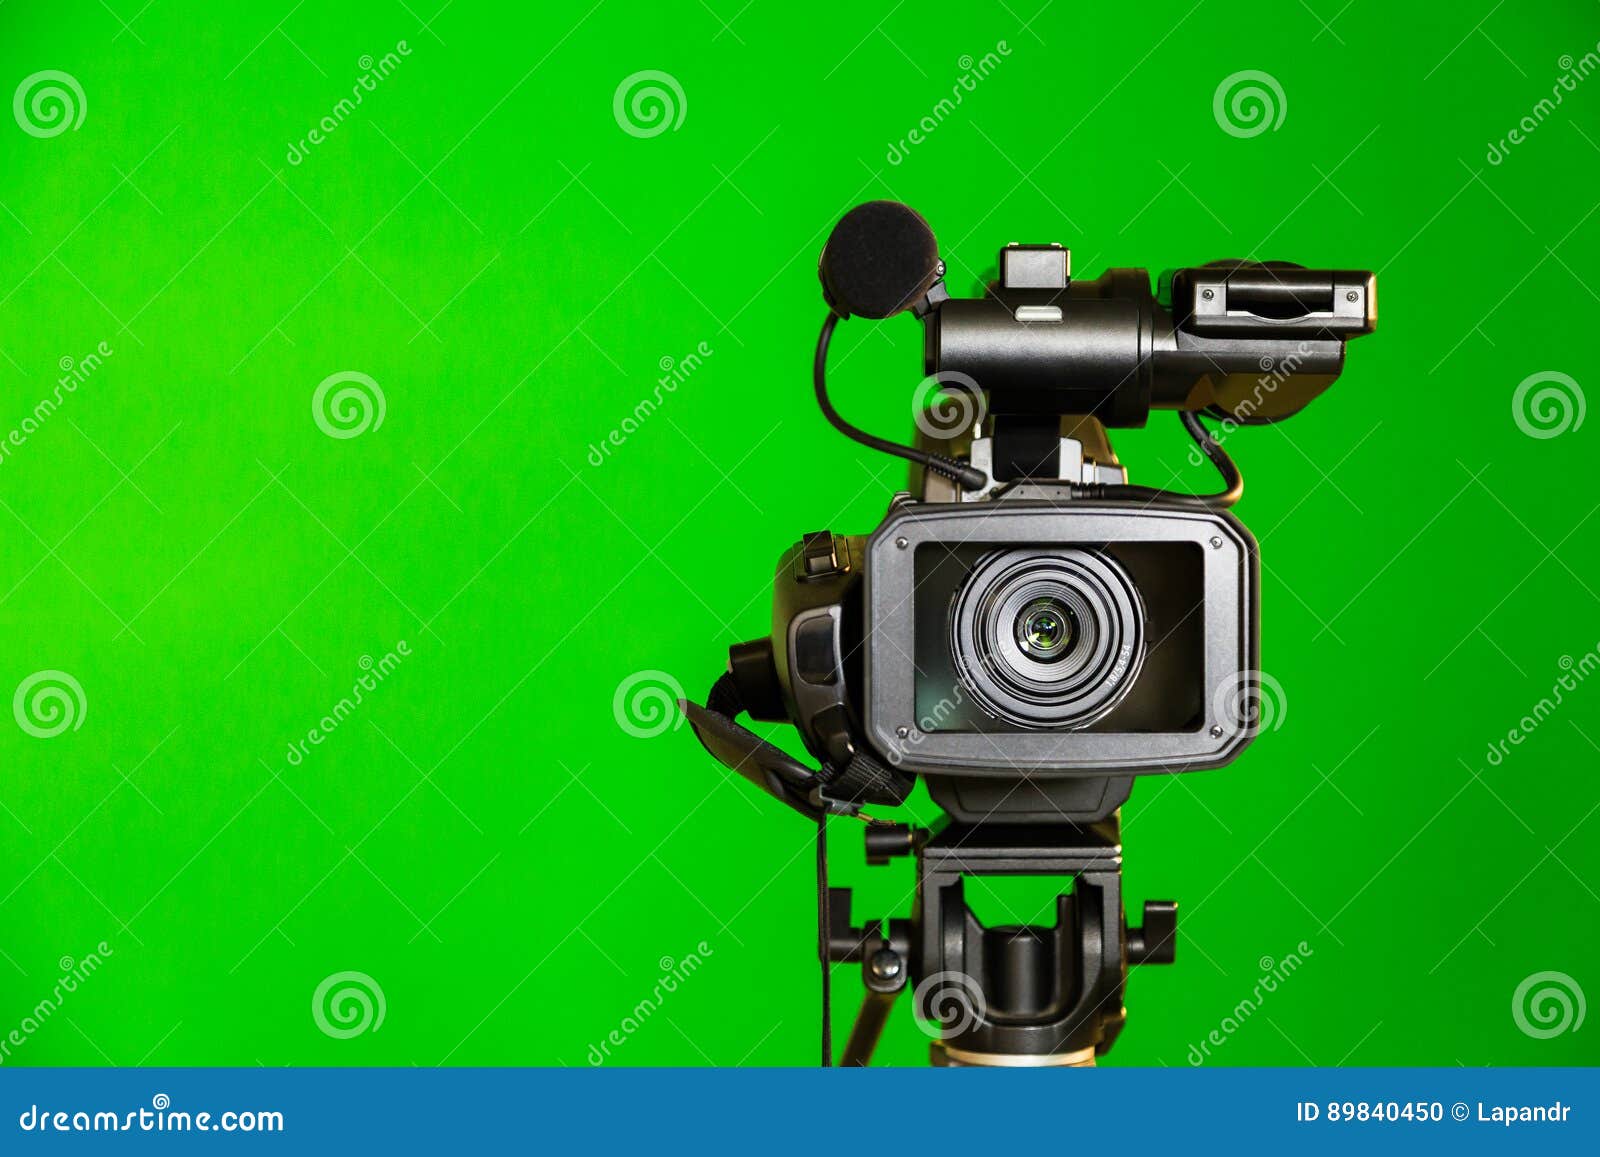 Видеокамера хромакей. Фотокамеры на зеленом фоне. Видеокамера зеленая. Видеокамера на зеленом фоне.